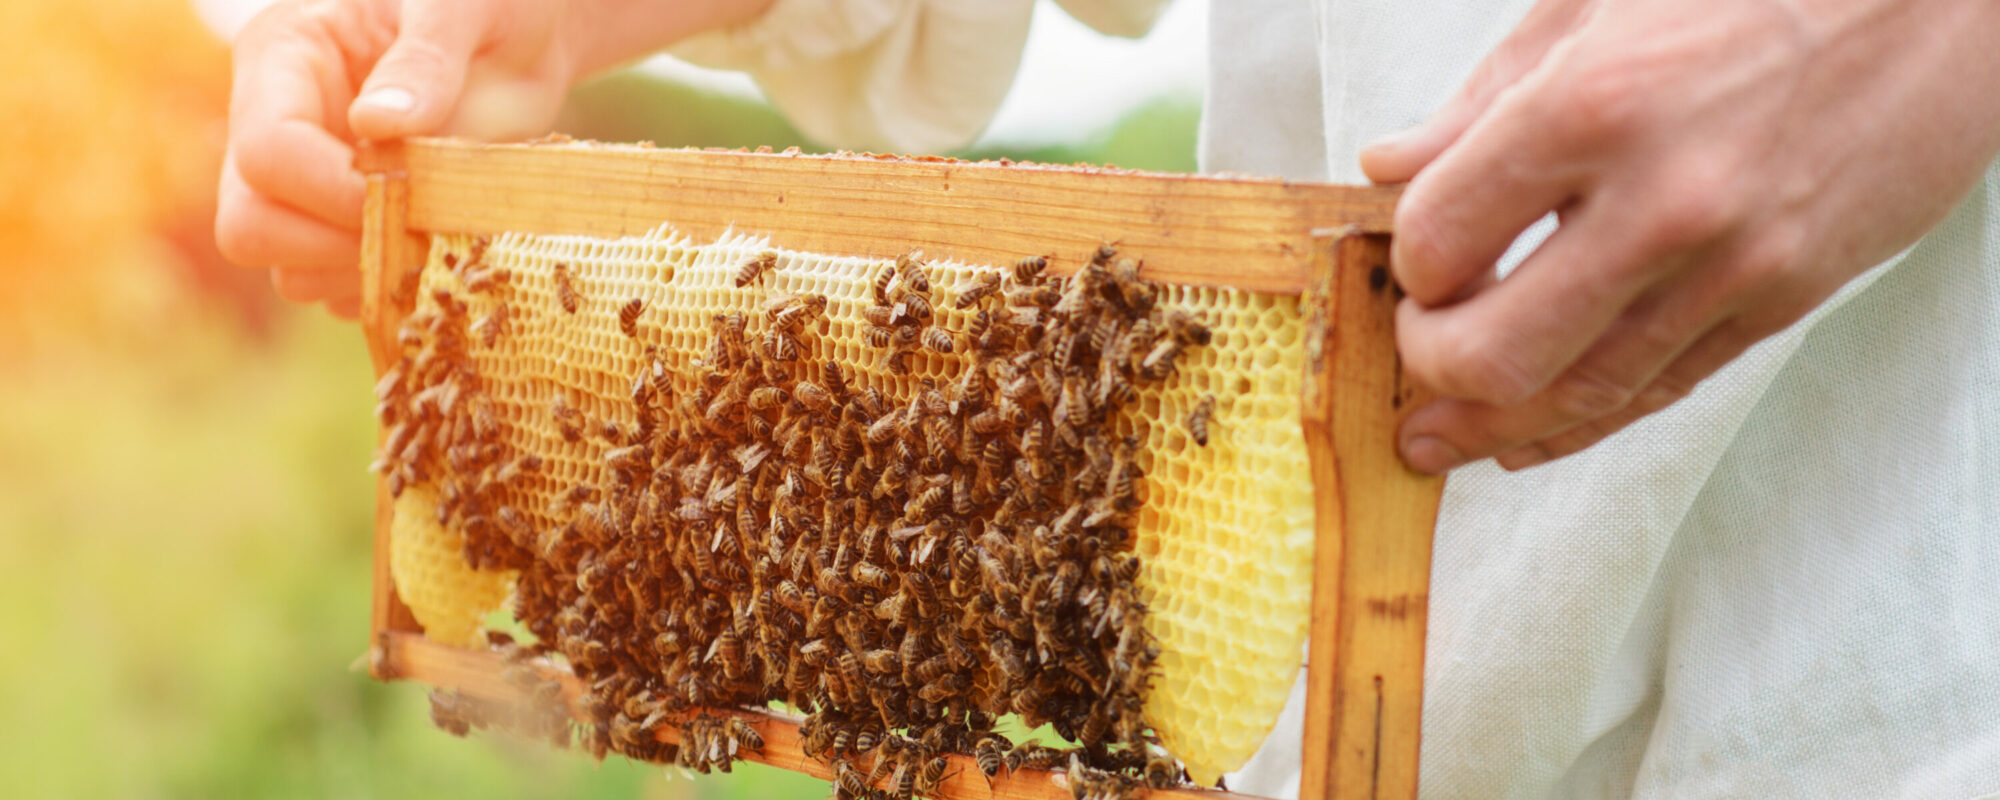 Imkerin zeigt Wabe mit Bienen